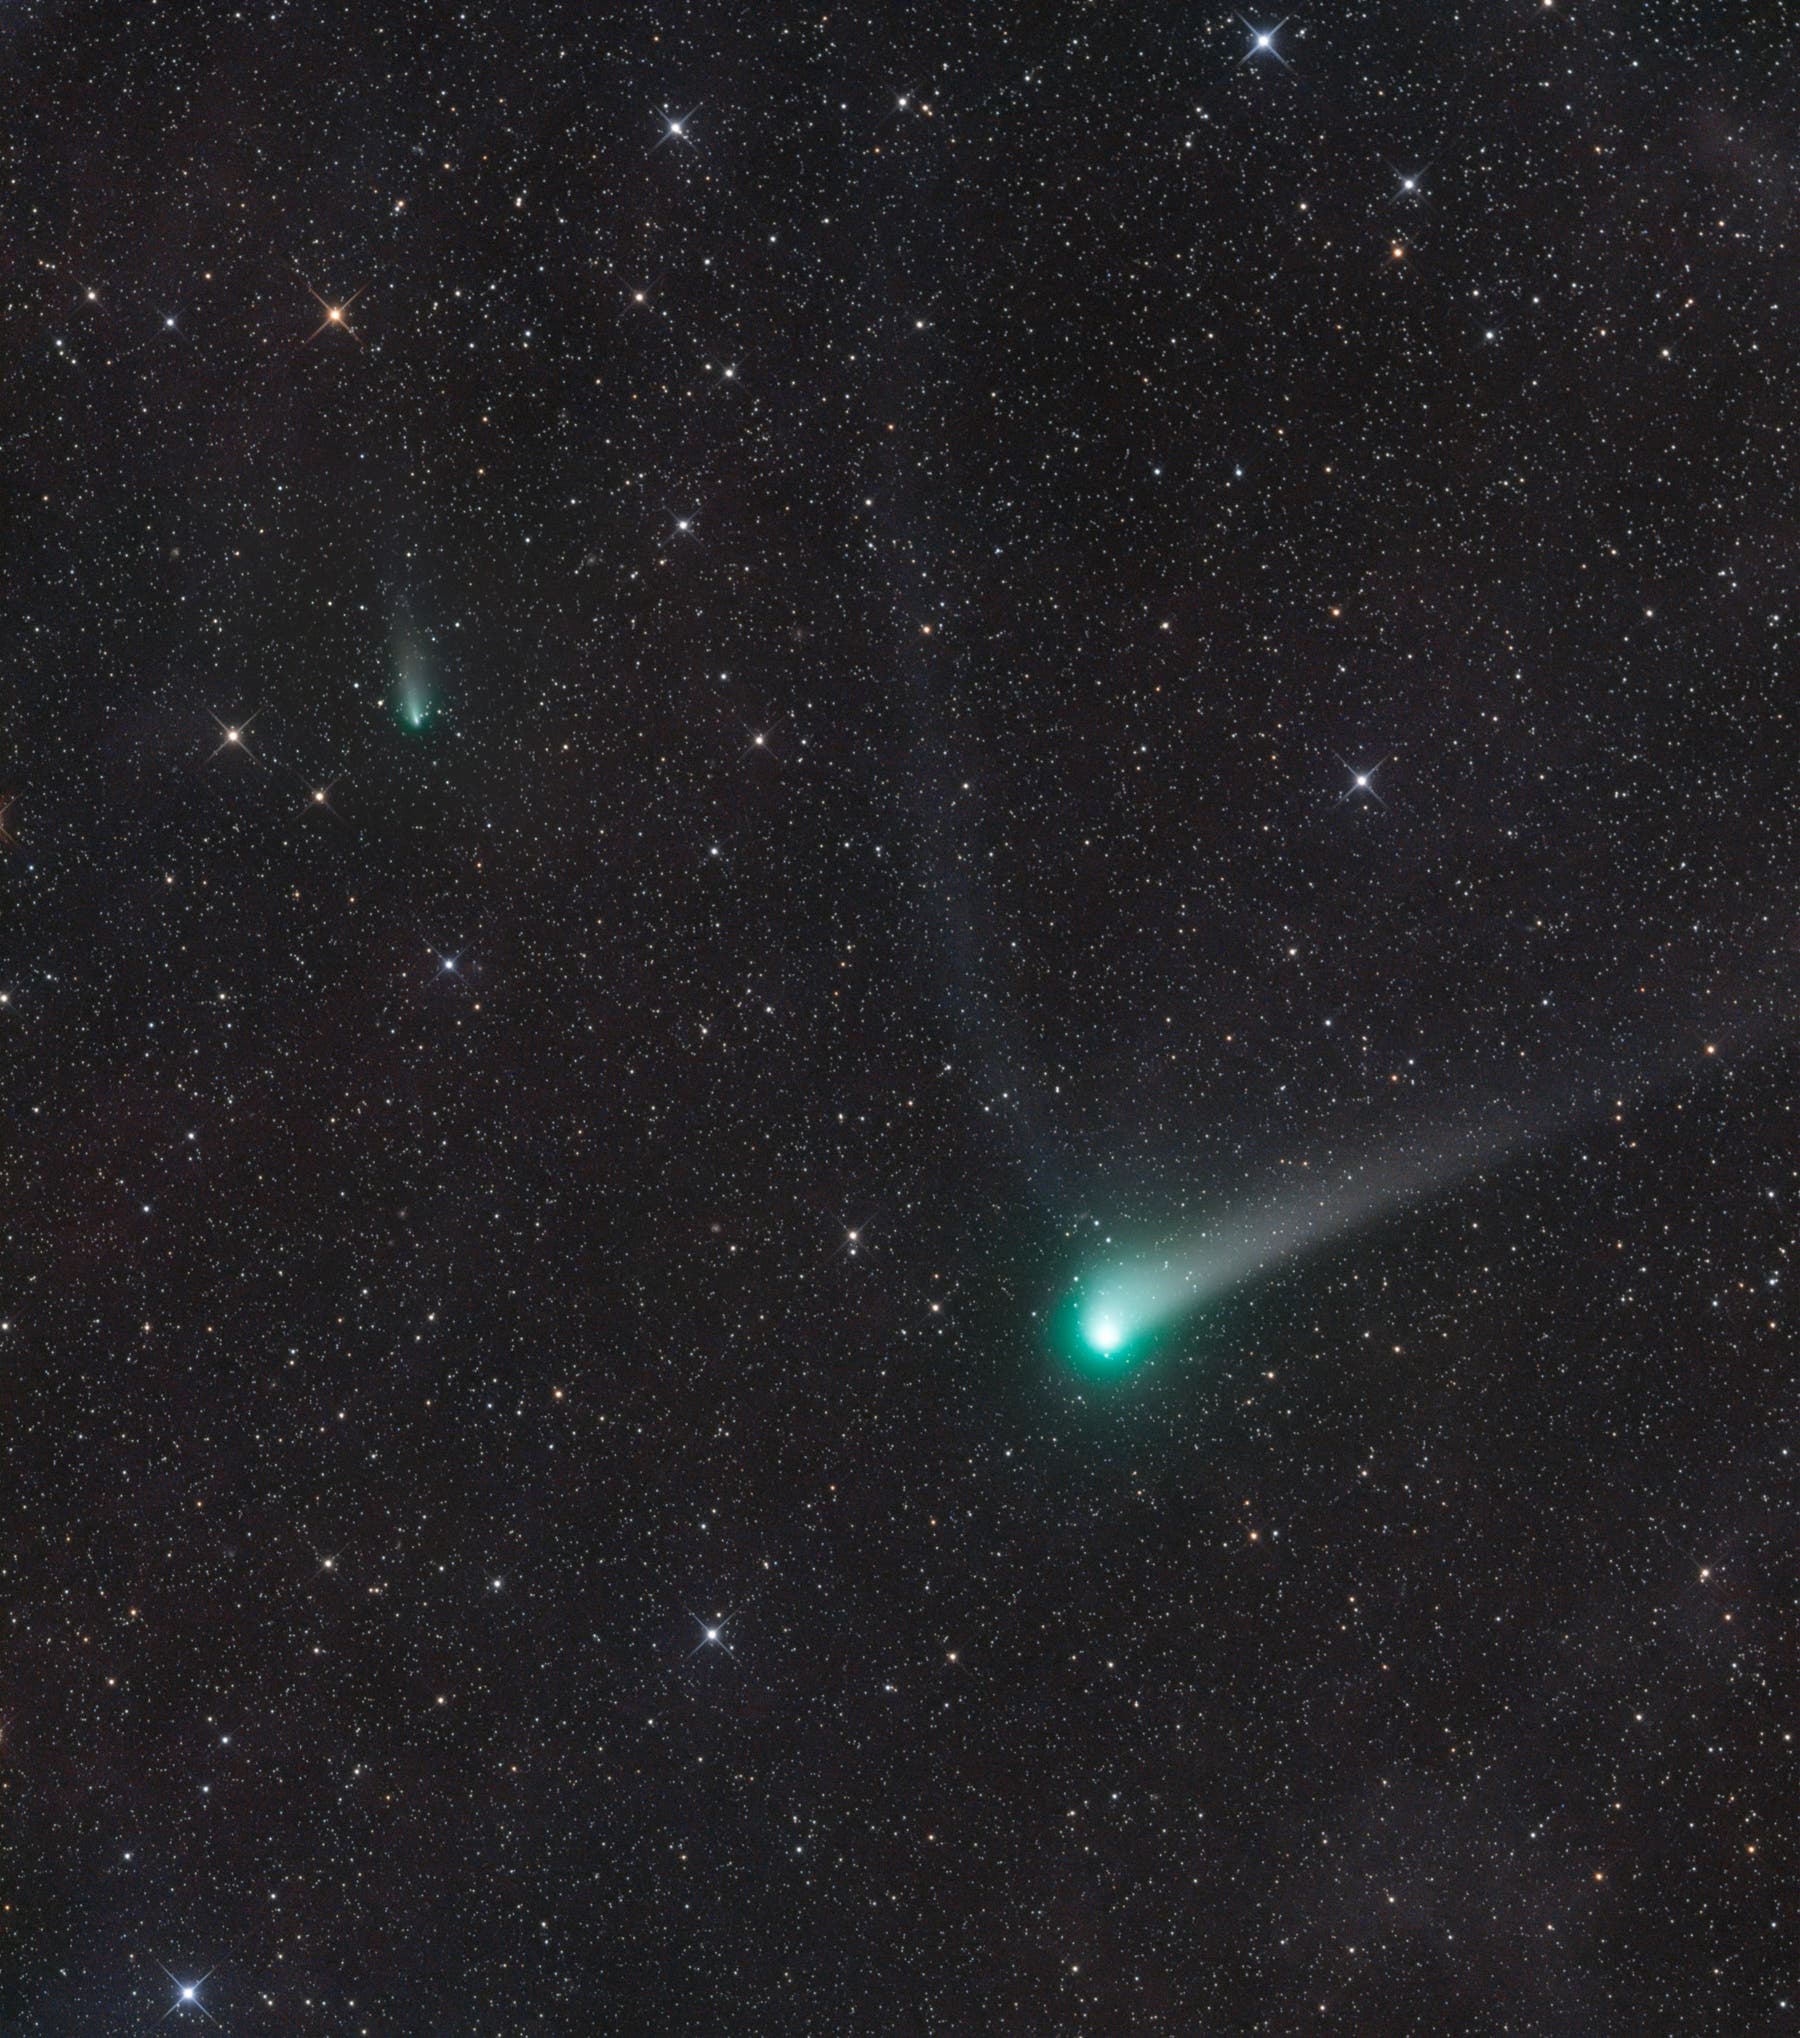 Komet C/2017 K2 Panstarrs und 73P/Schwassmann-Wachmann